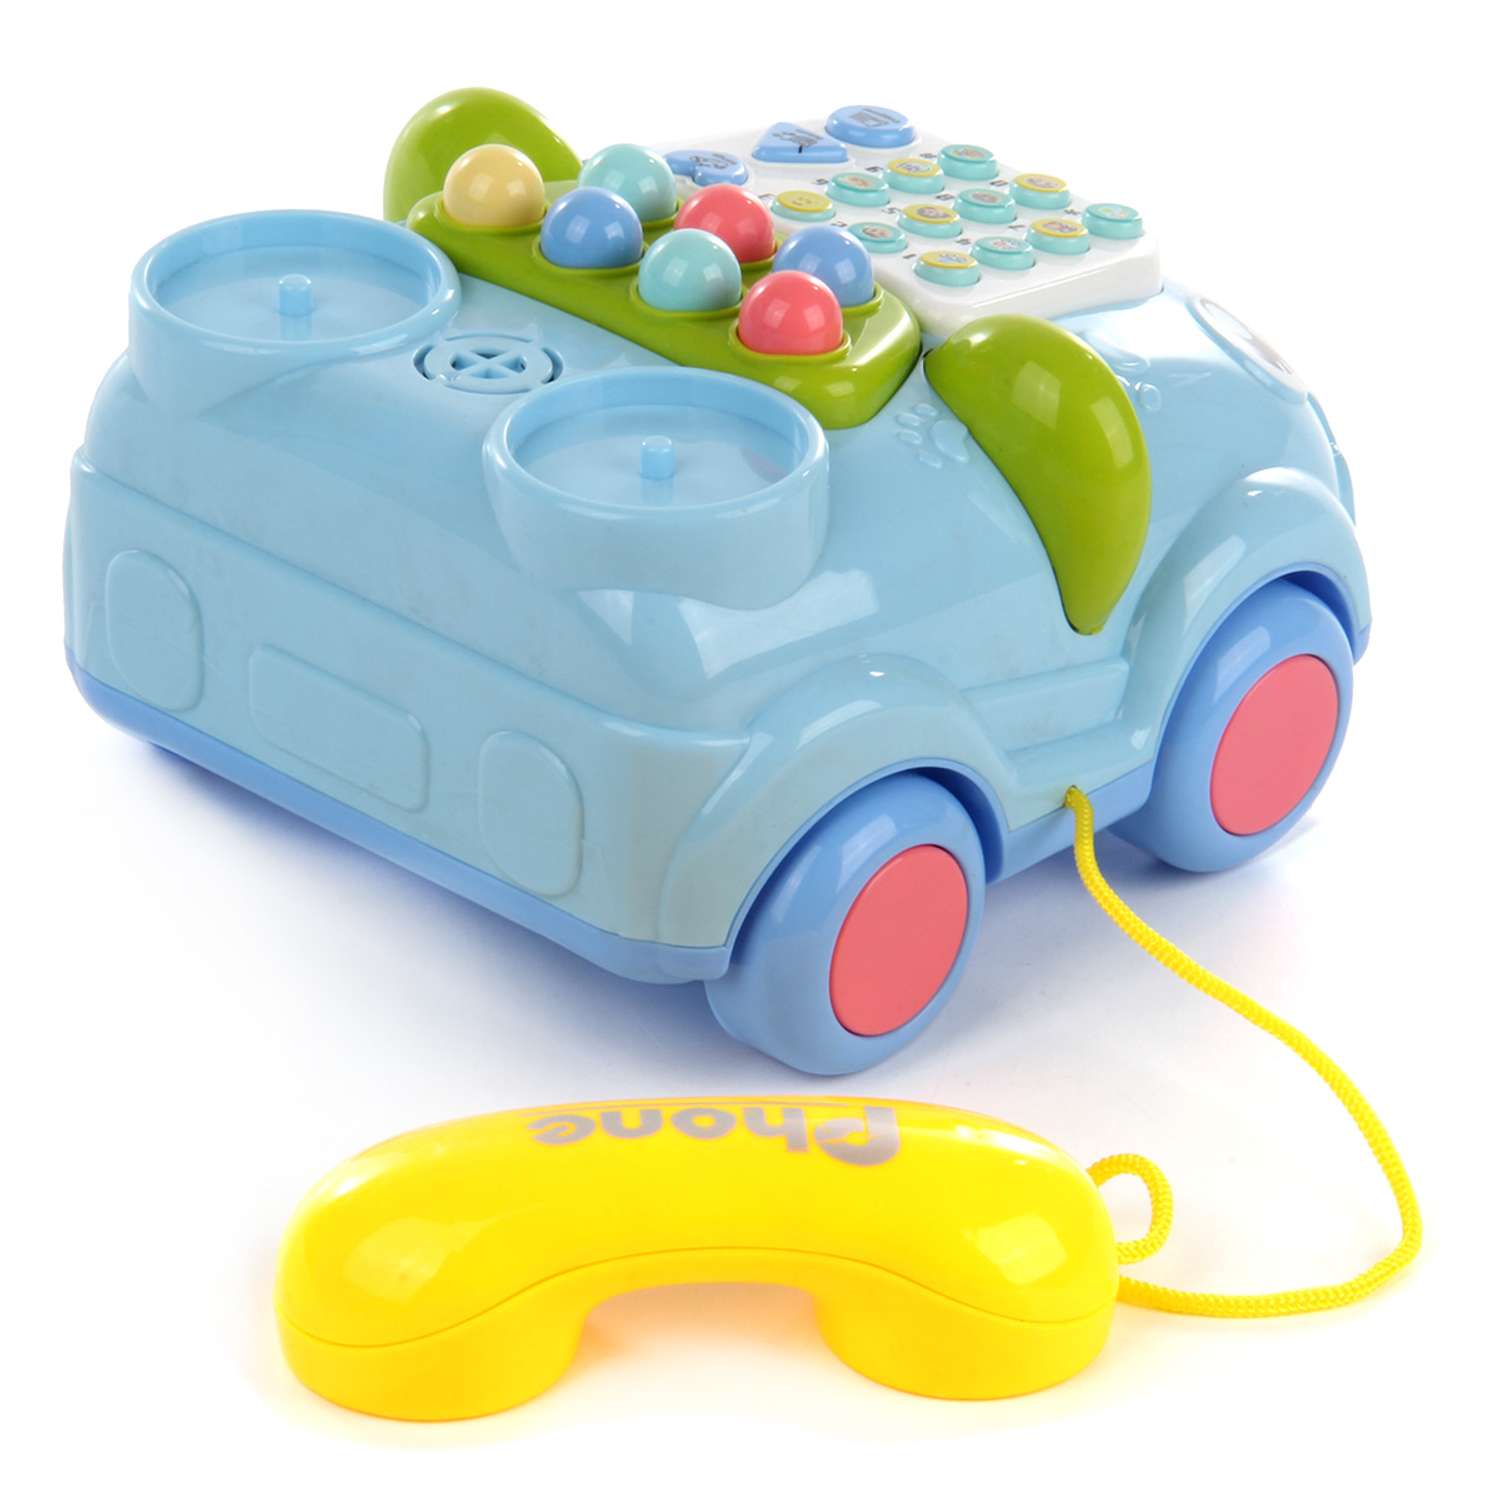 Развивающая игрушка 6 в 1 Veld Co Телефон Машинка подсвечивается со звуками - фото 2